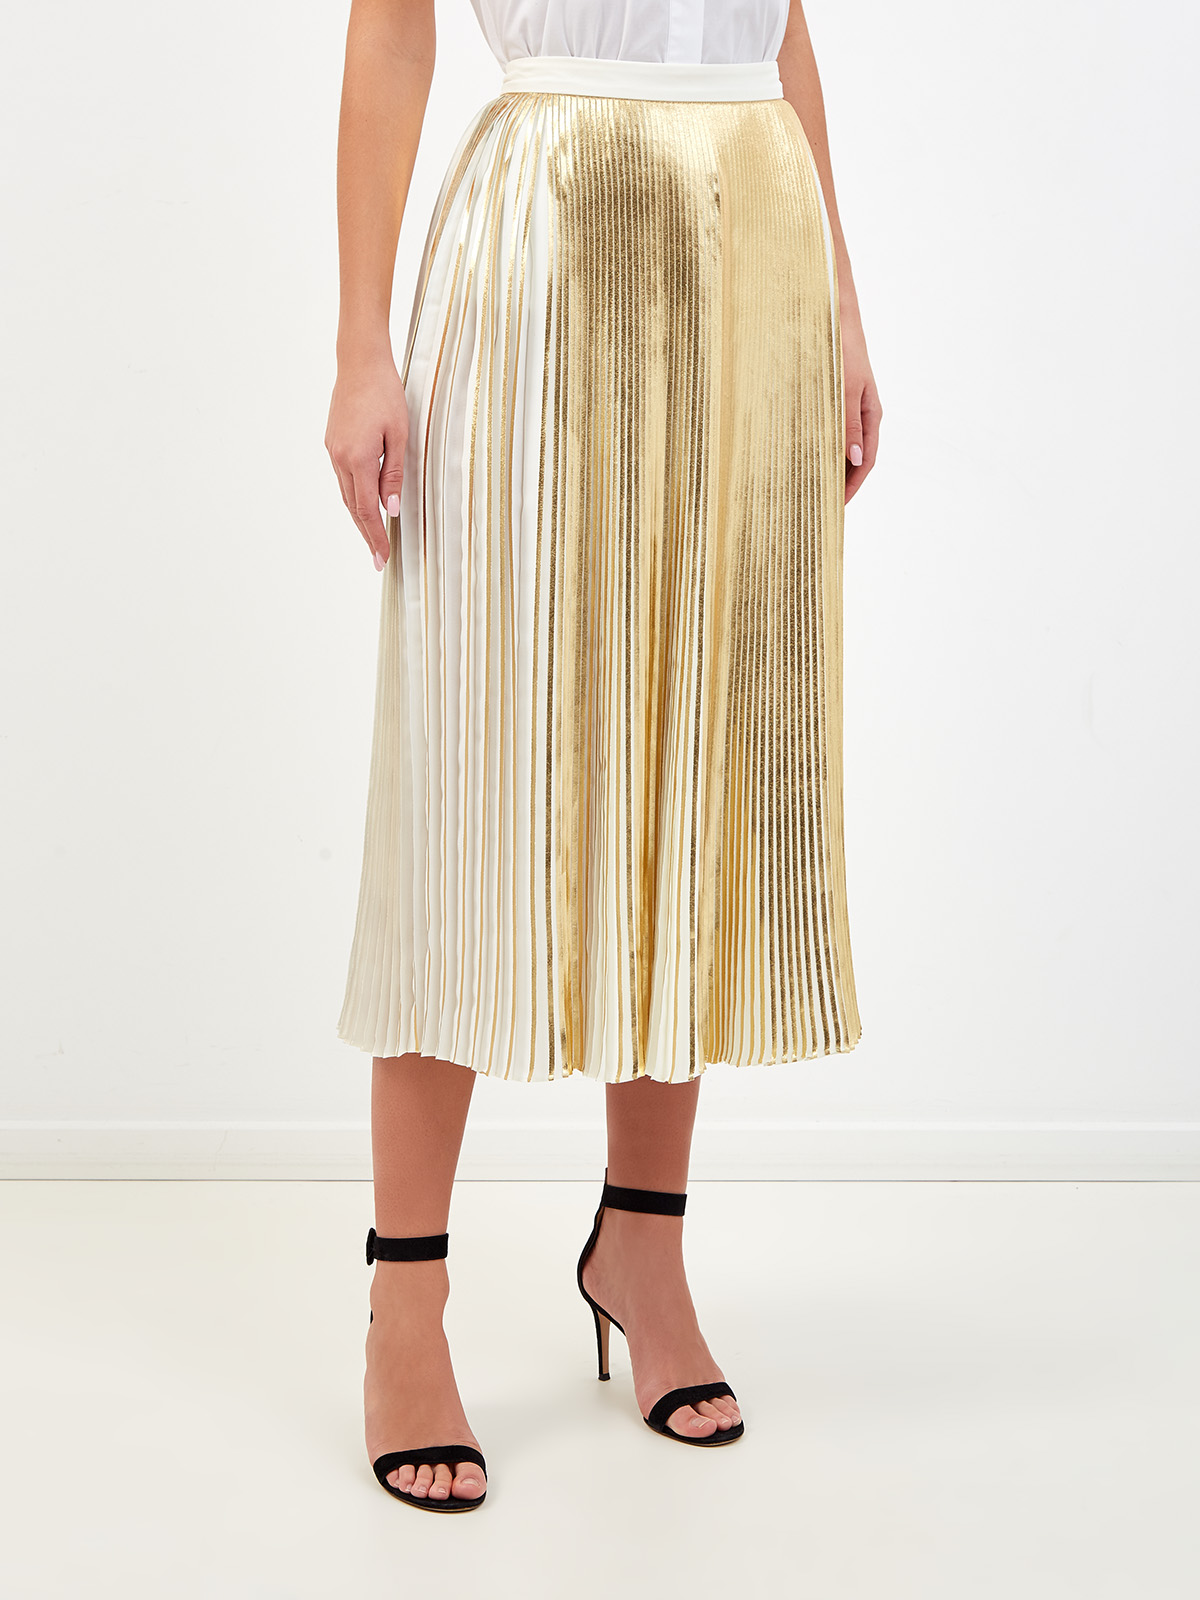 Плиссированная юбка-миди с металлизированным напылением VALENTINO, цвет золотистый, размер 40;42;44;38 - фото 3